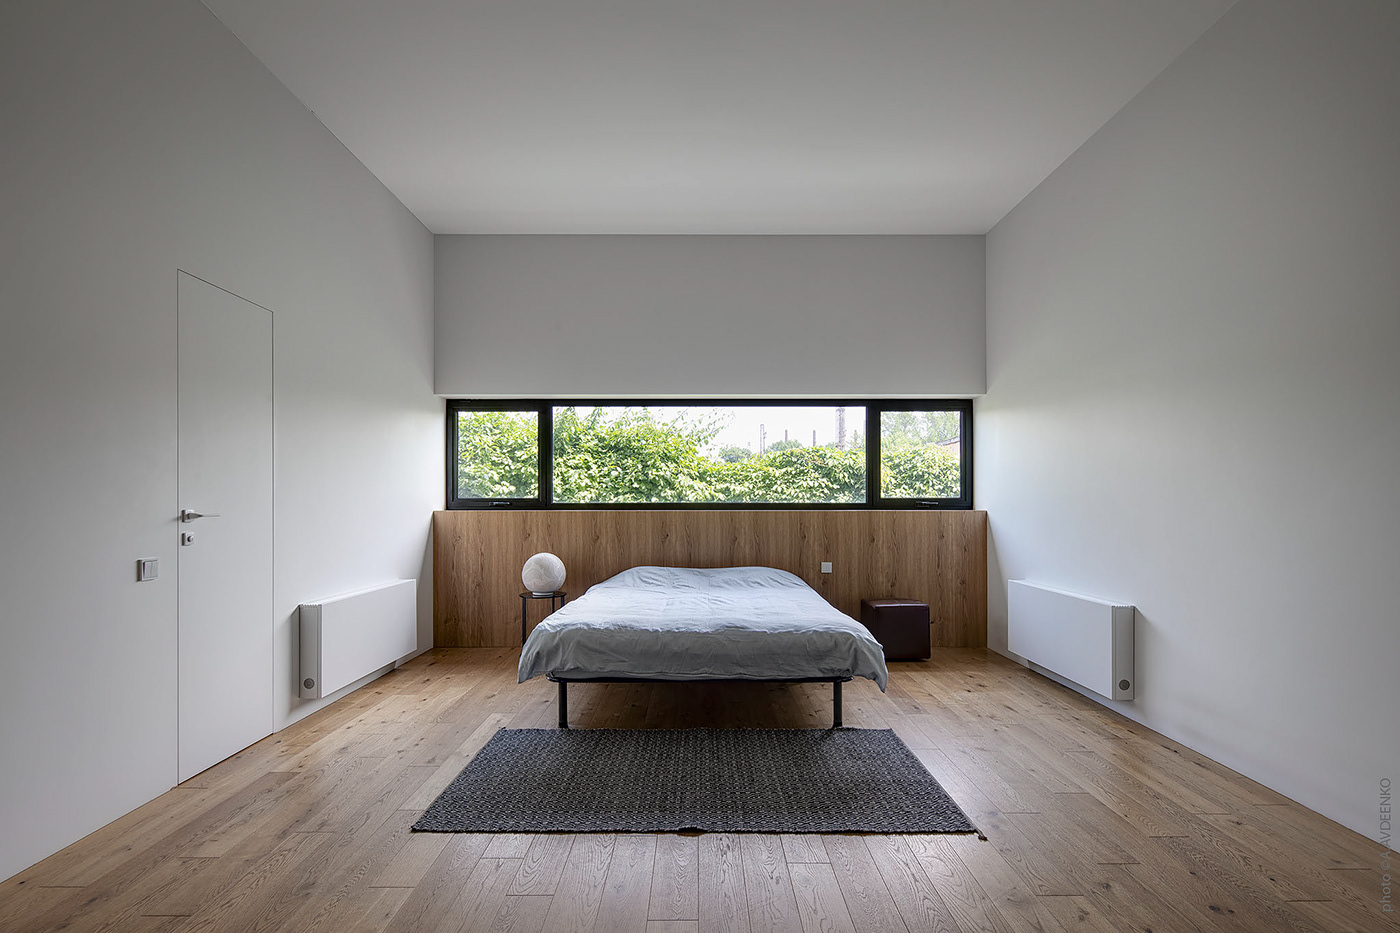 architecture design Interior interior design  living room minimal modern